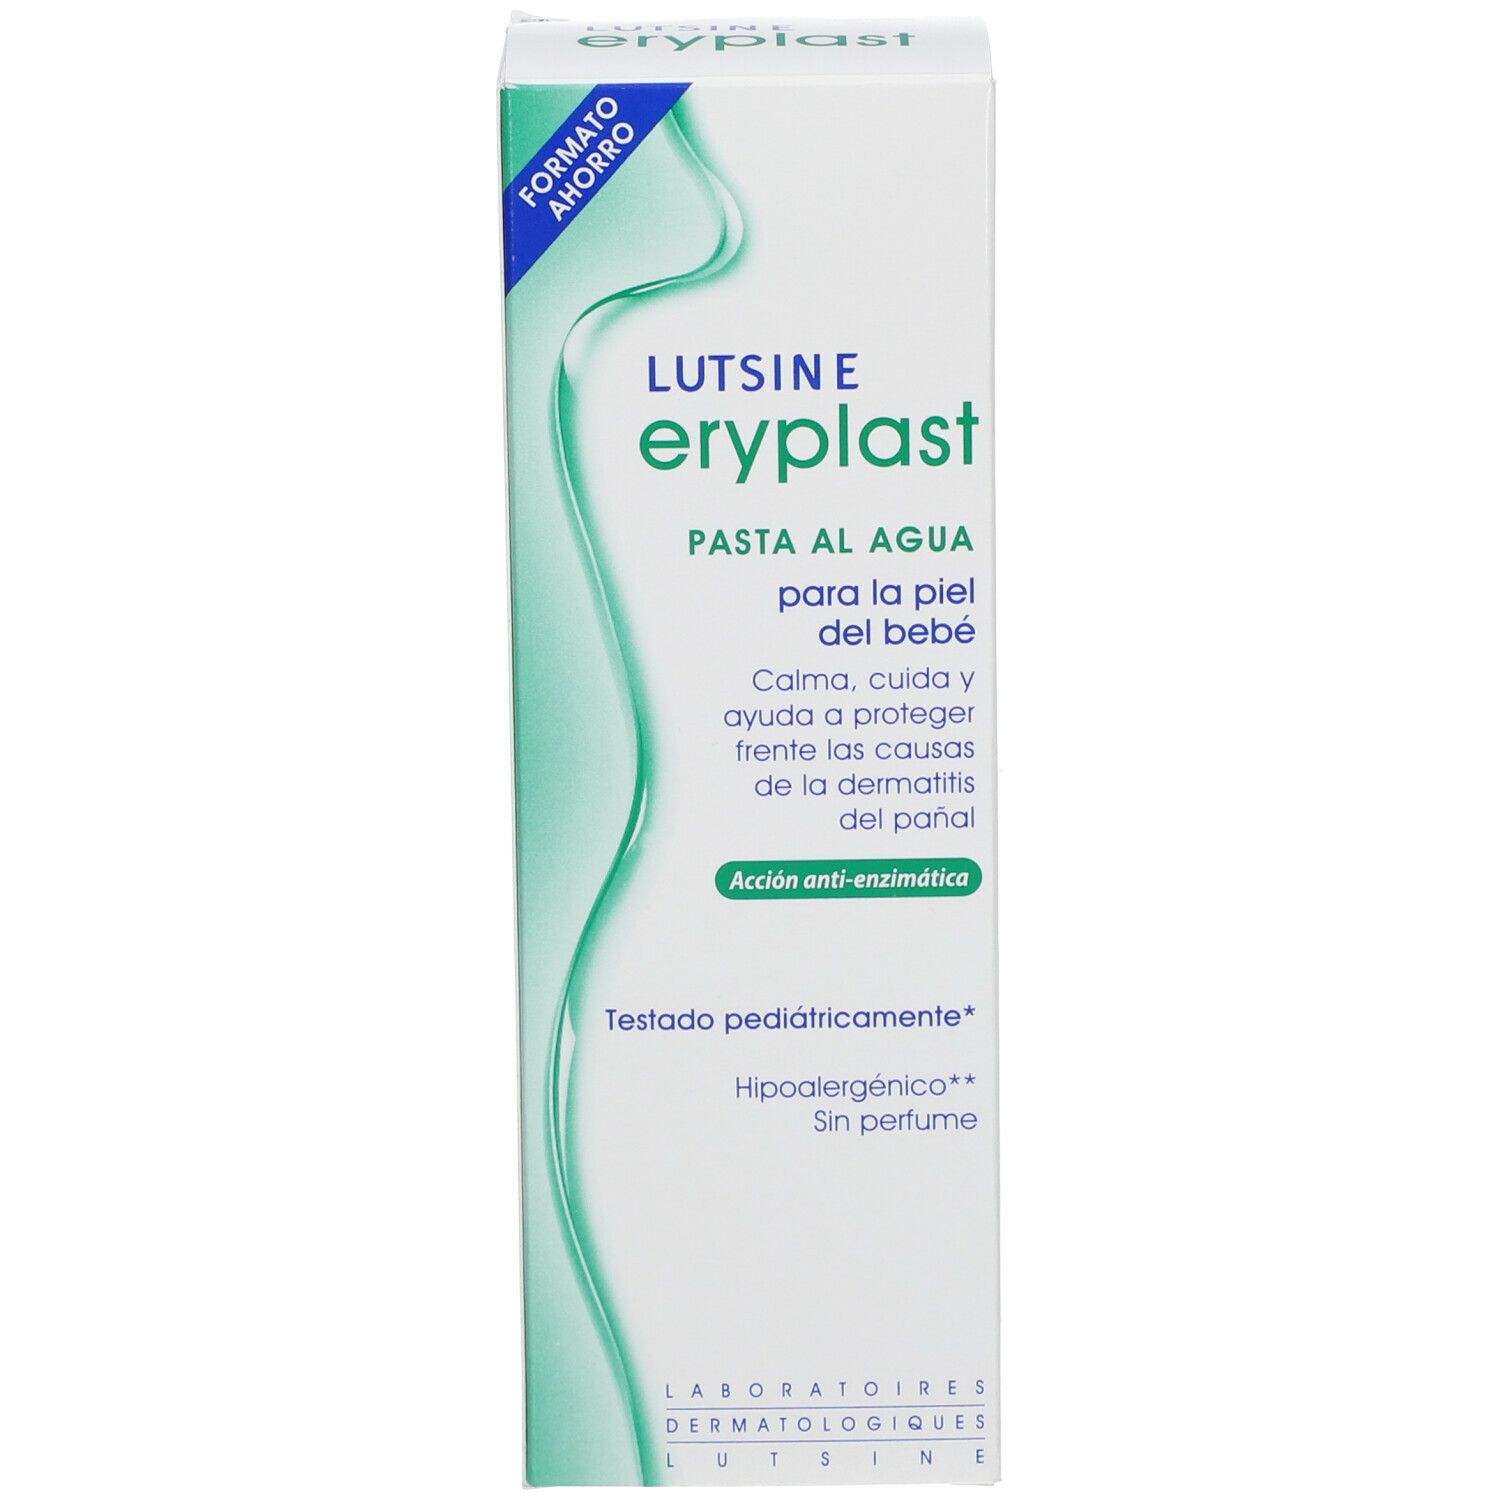 Eryplast - Pate à l'Eau - 200 g  Pharmacie & parapharmacie en ligne